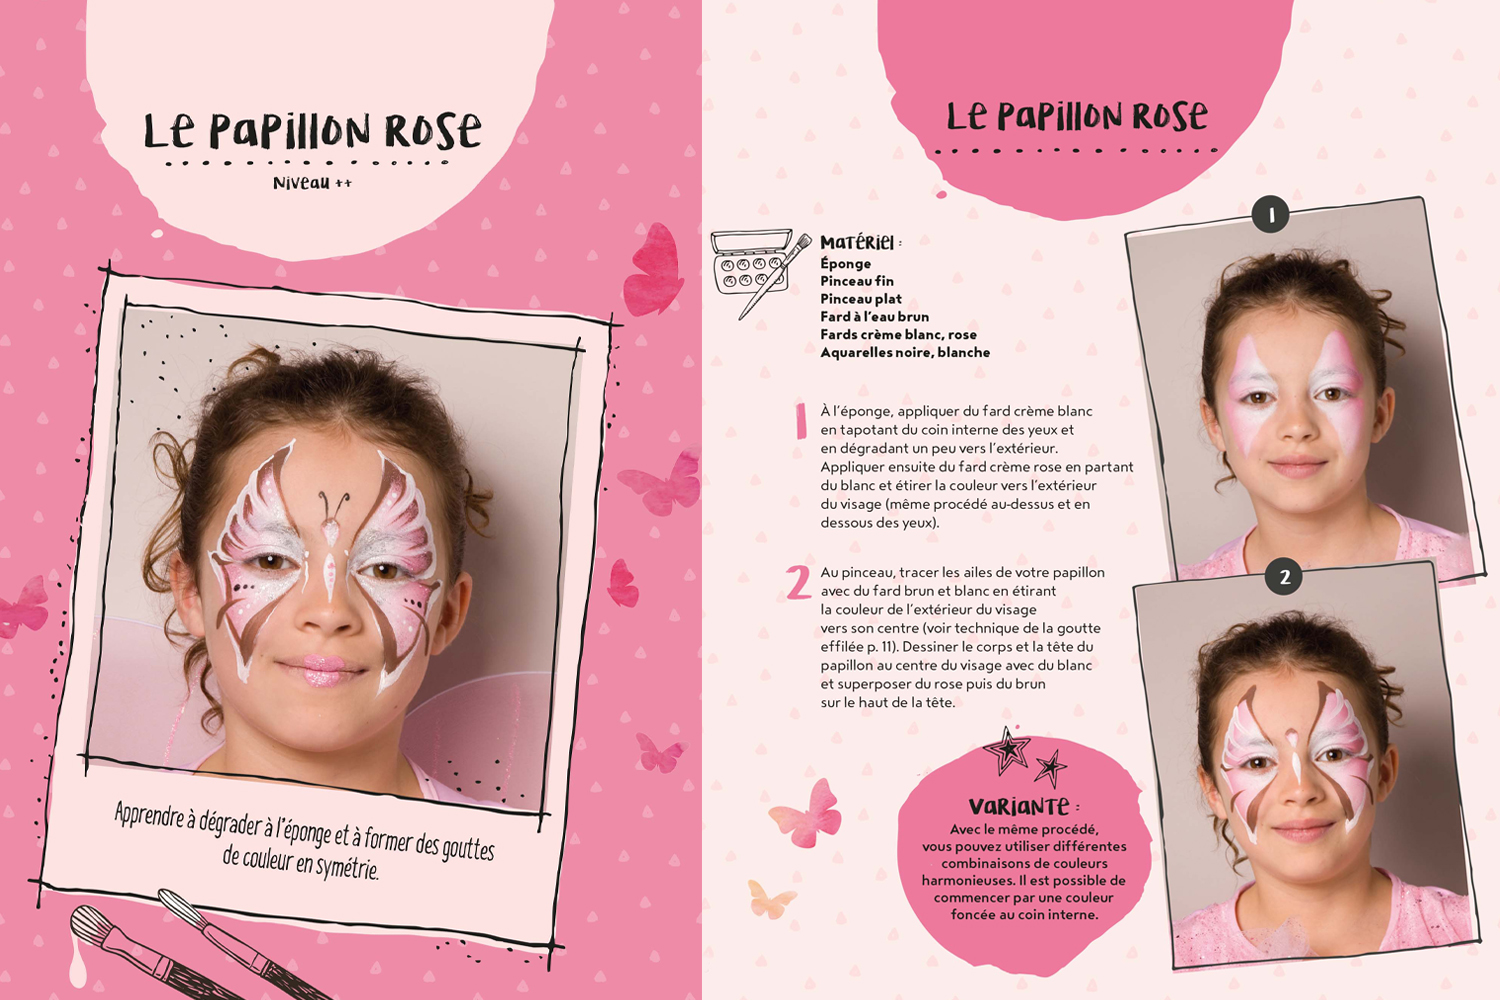 Maquillage enfant Princesse d'hiver - Idées conseils et tuto Maquillage